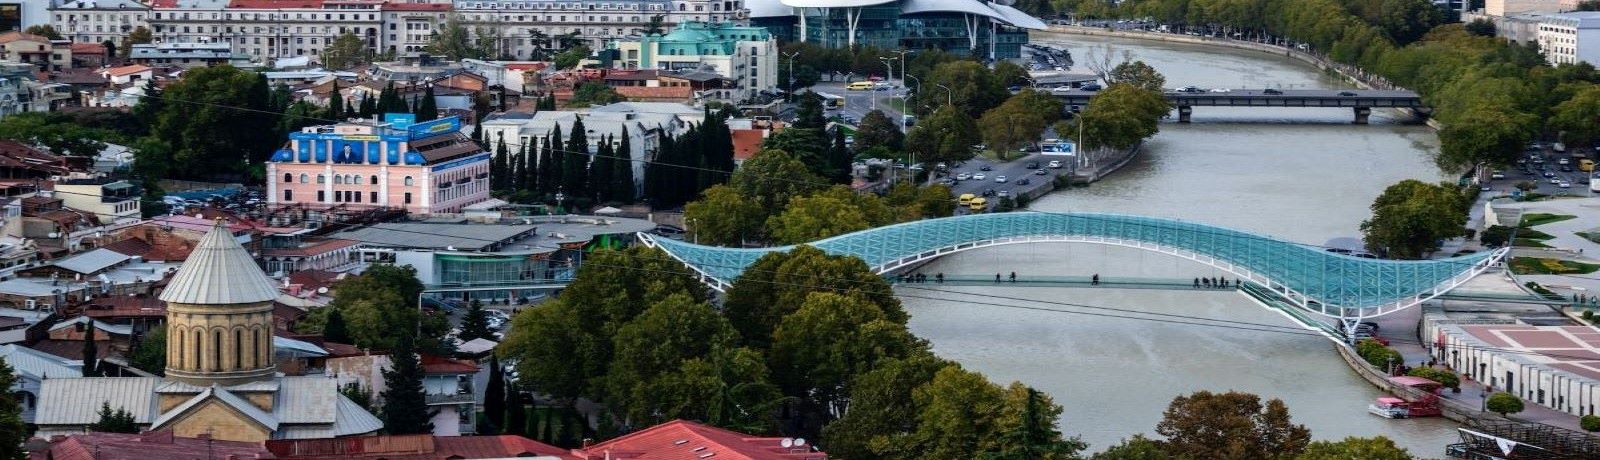 גשר השלום בעיר טביליסי - גאורגיה